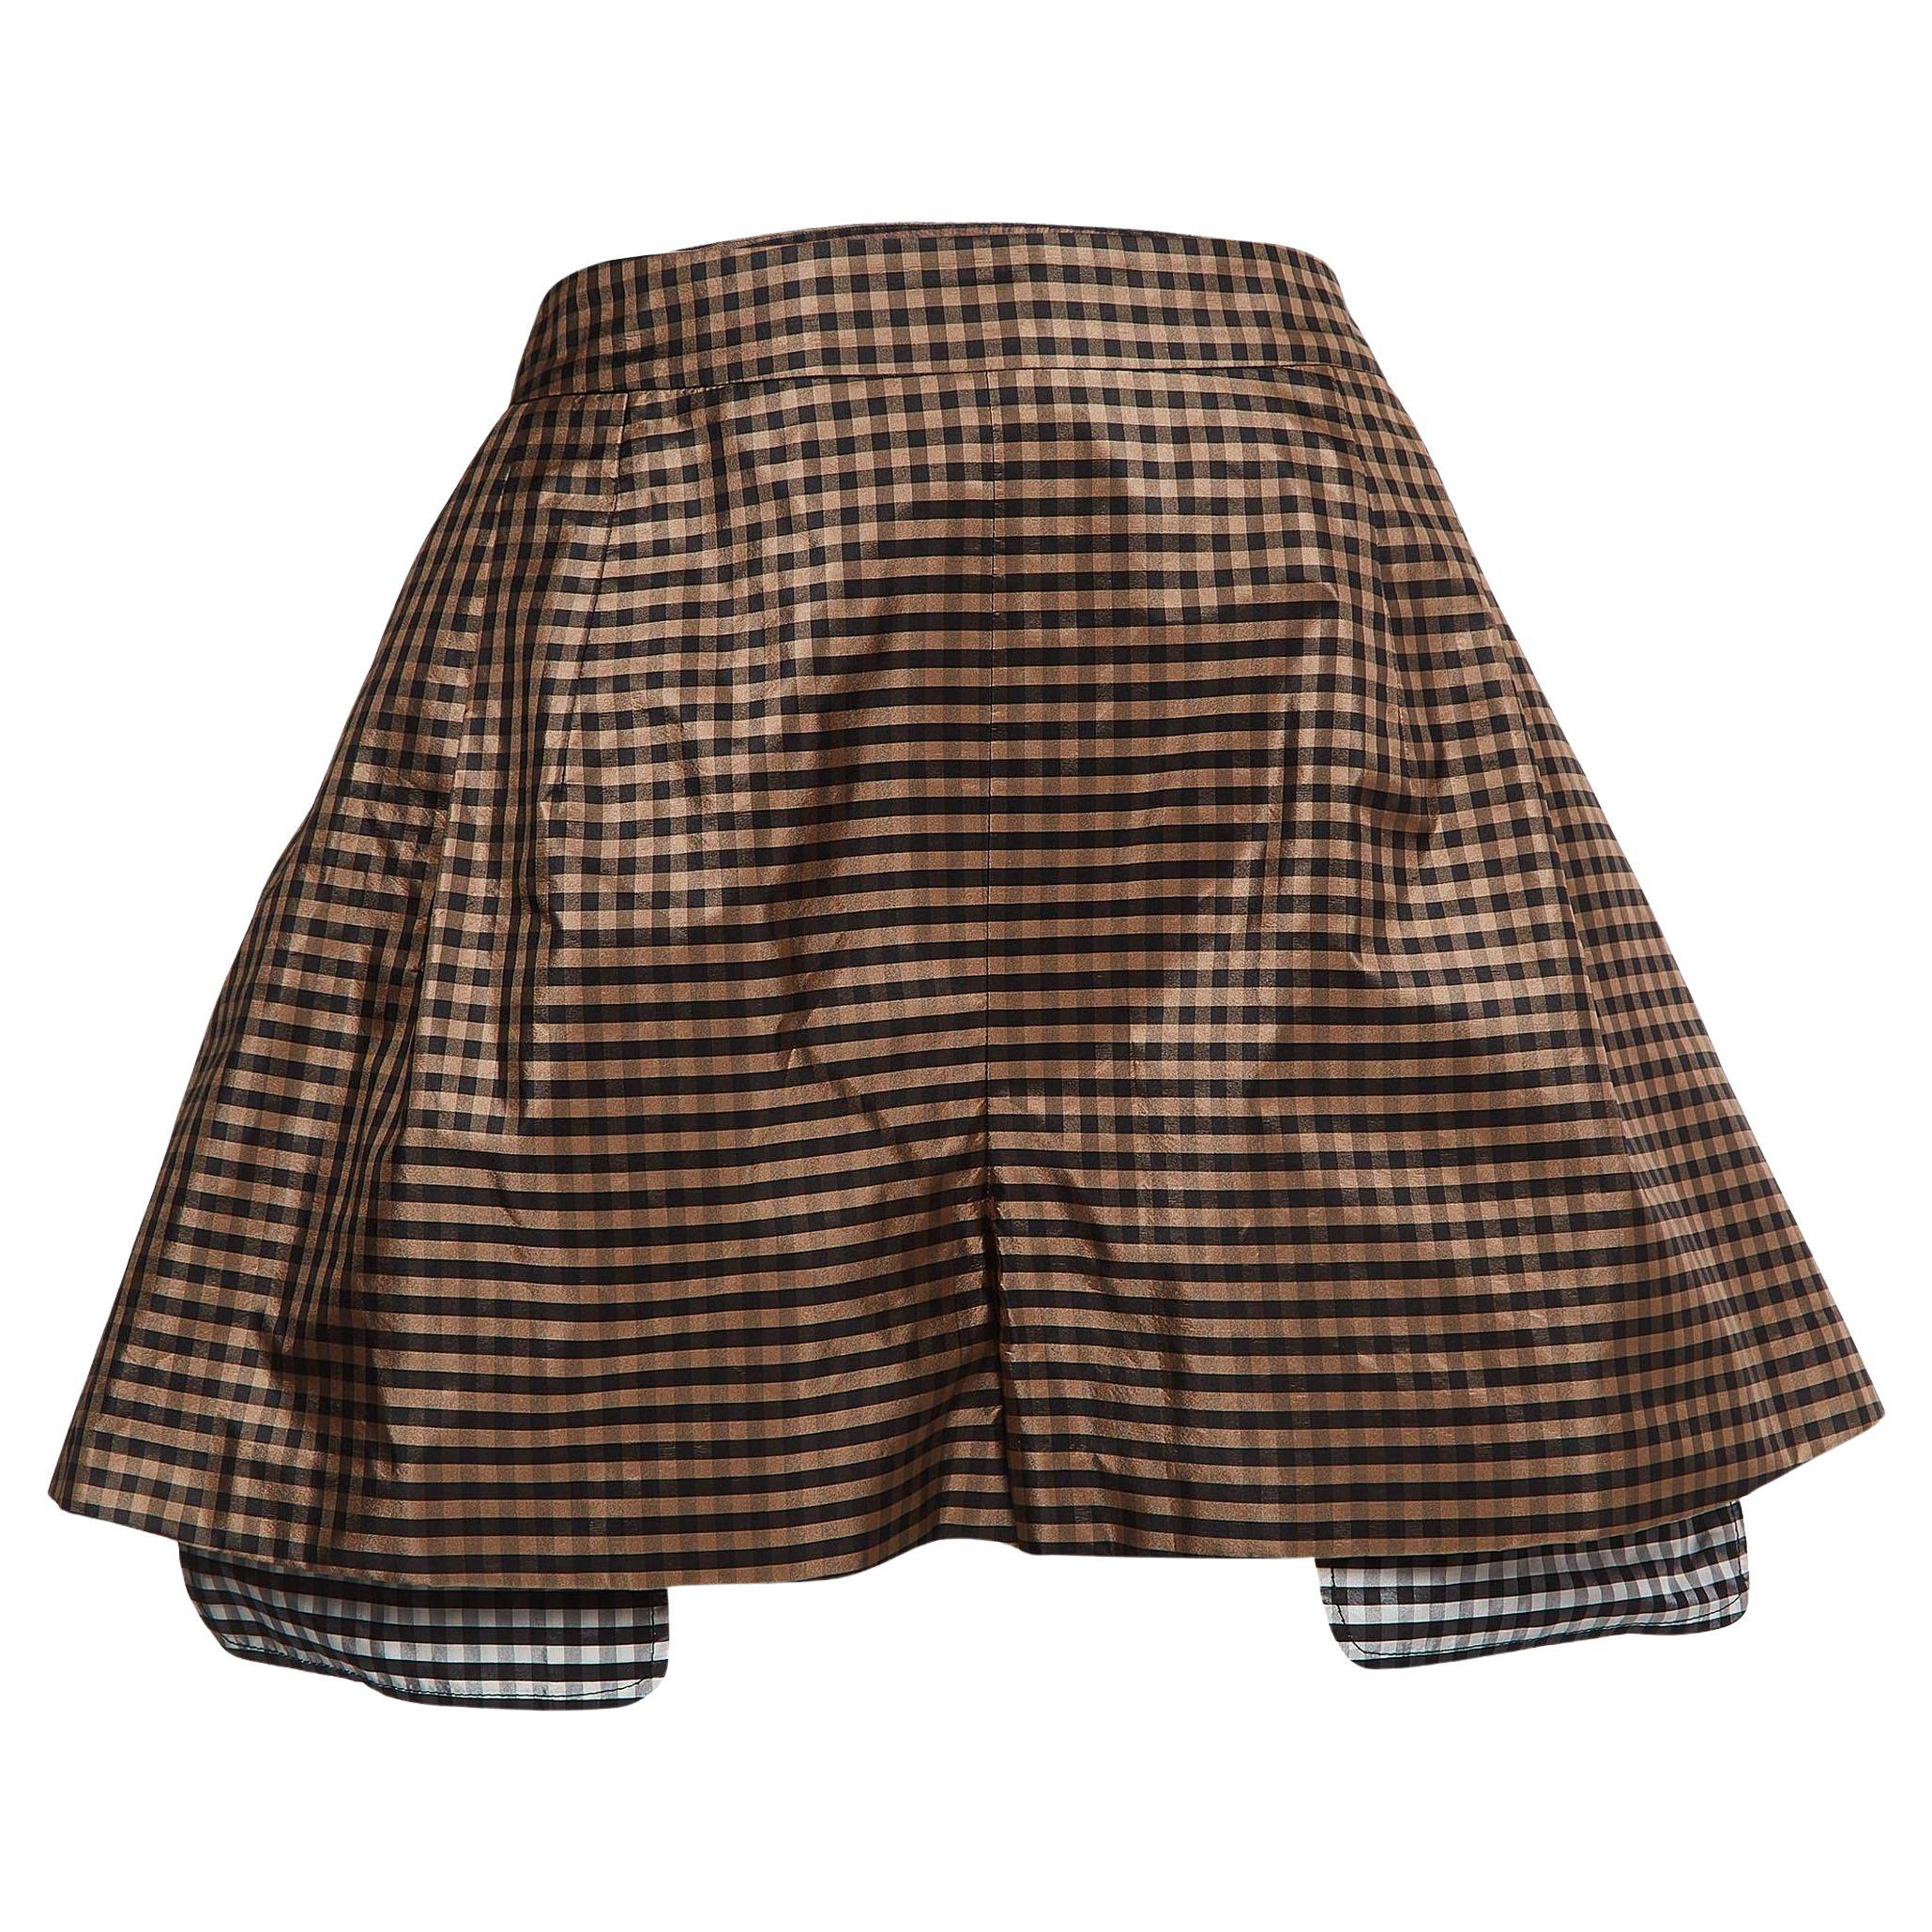 Dior Brown Vichy Print Silk High Waist Shorts M